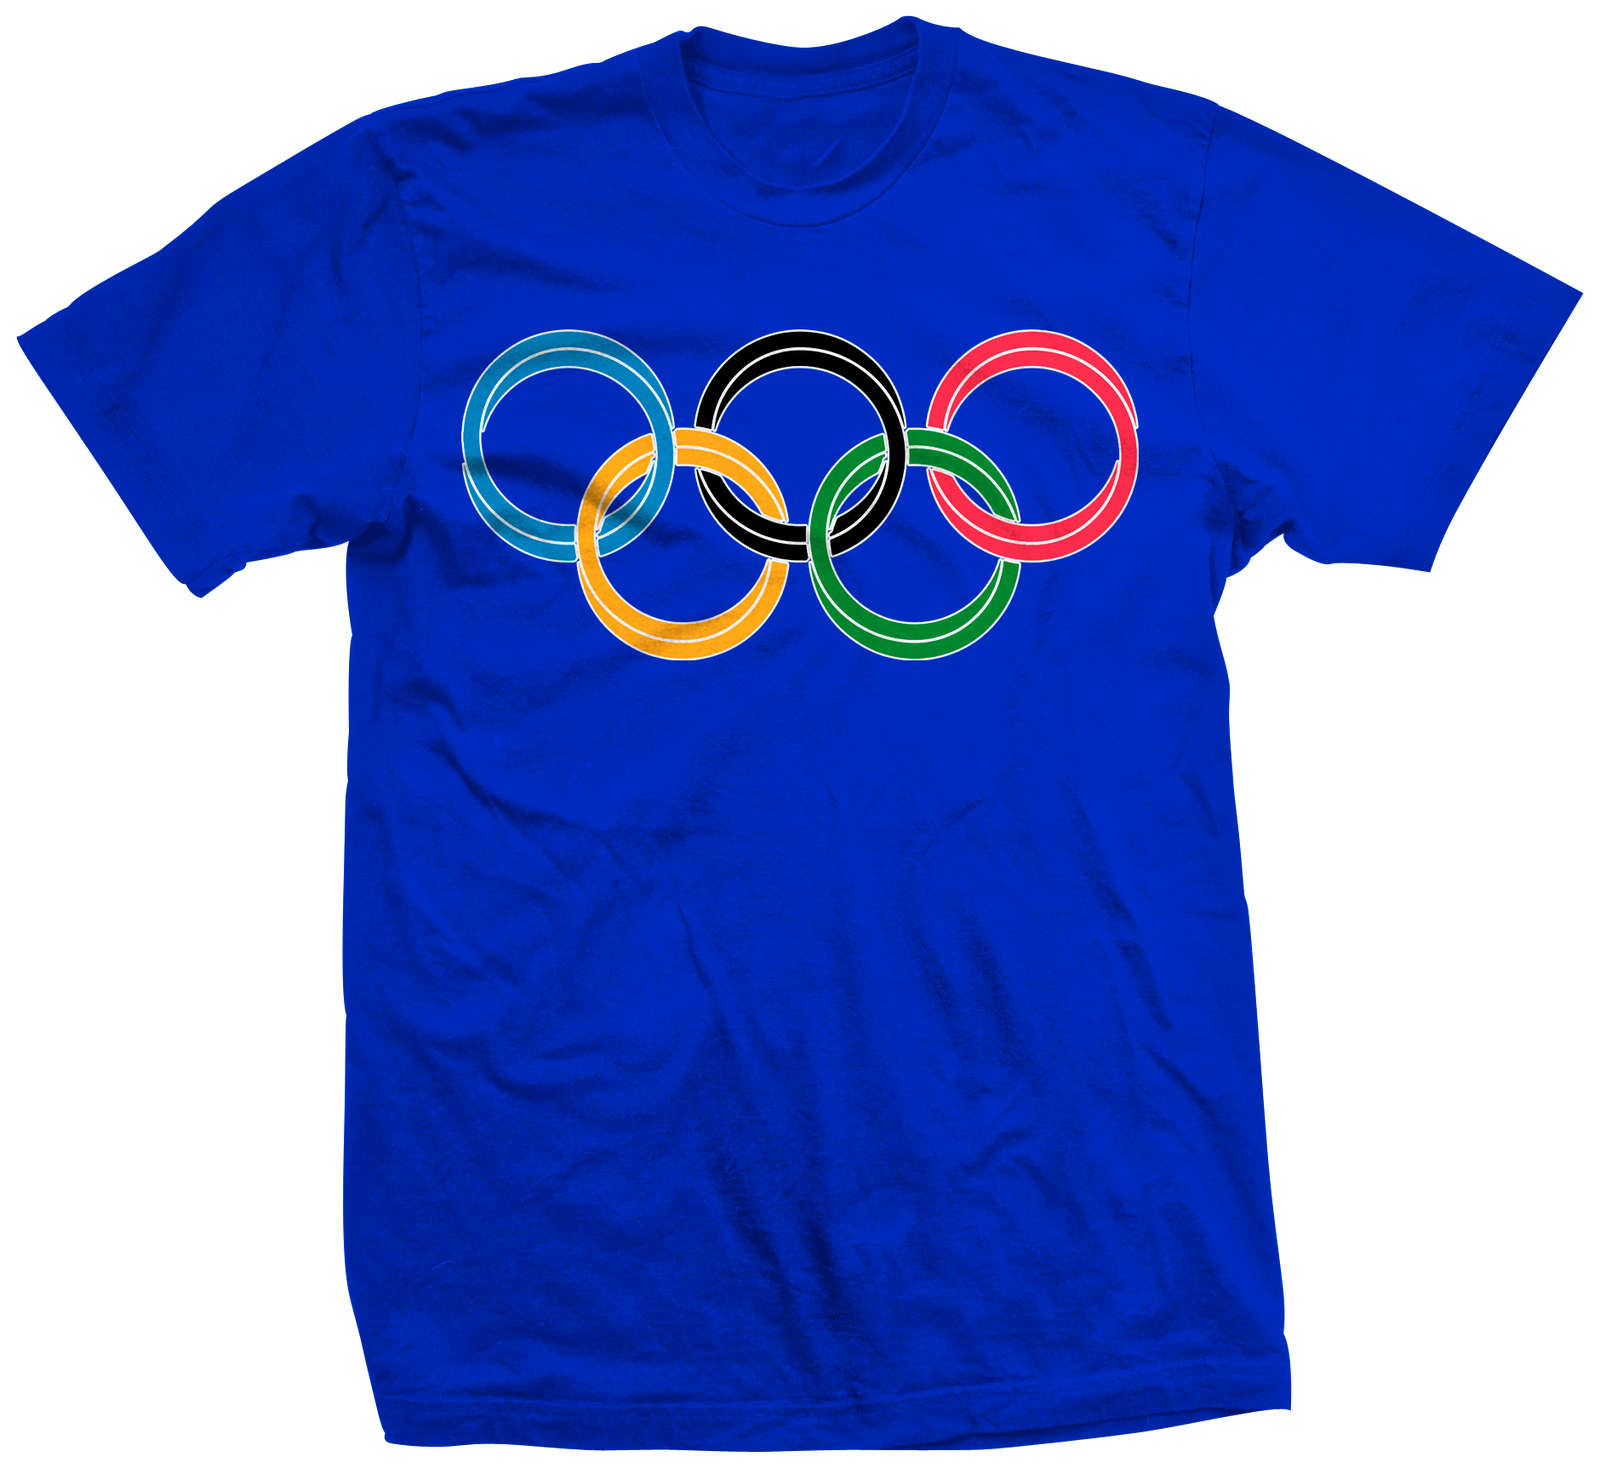 Olympic Rings Tee